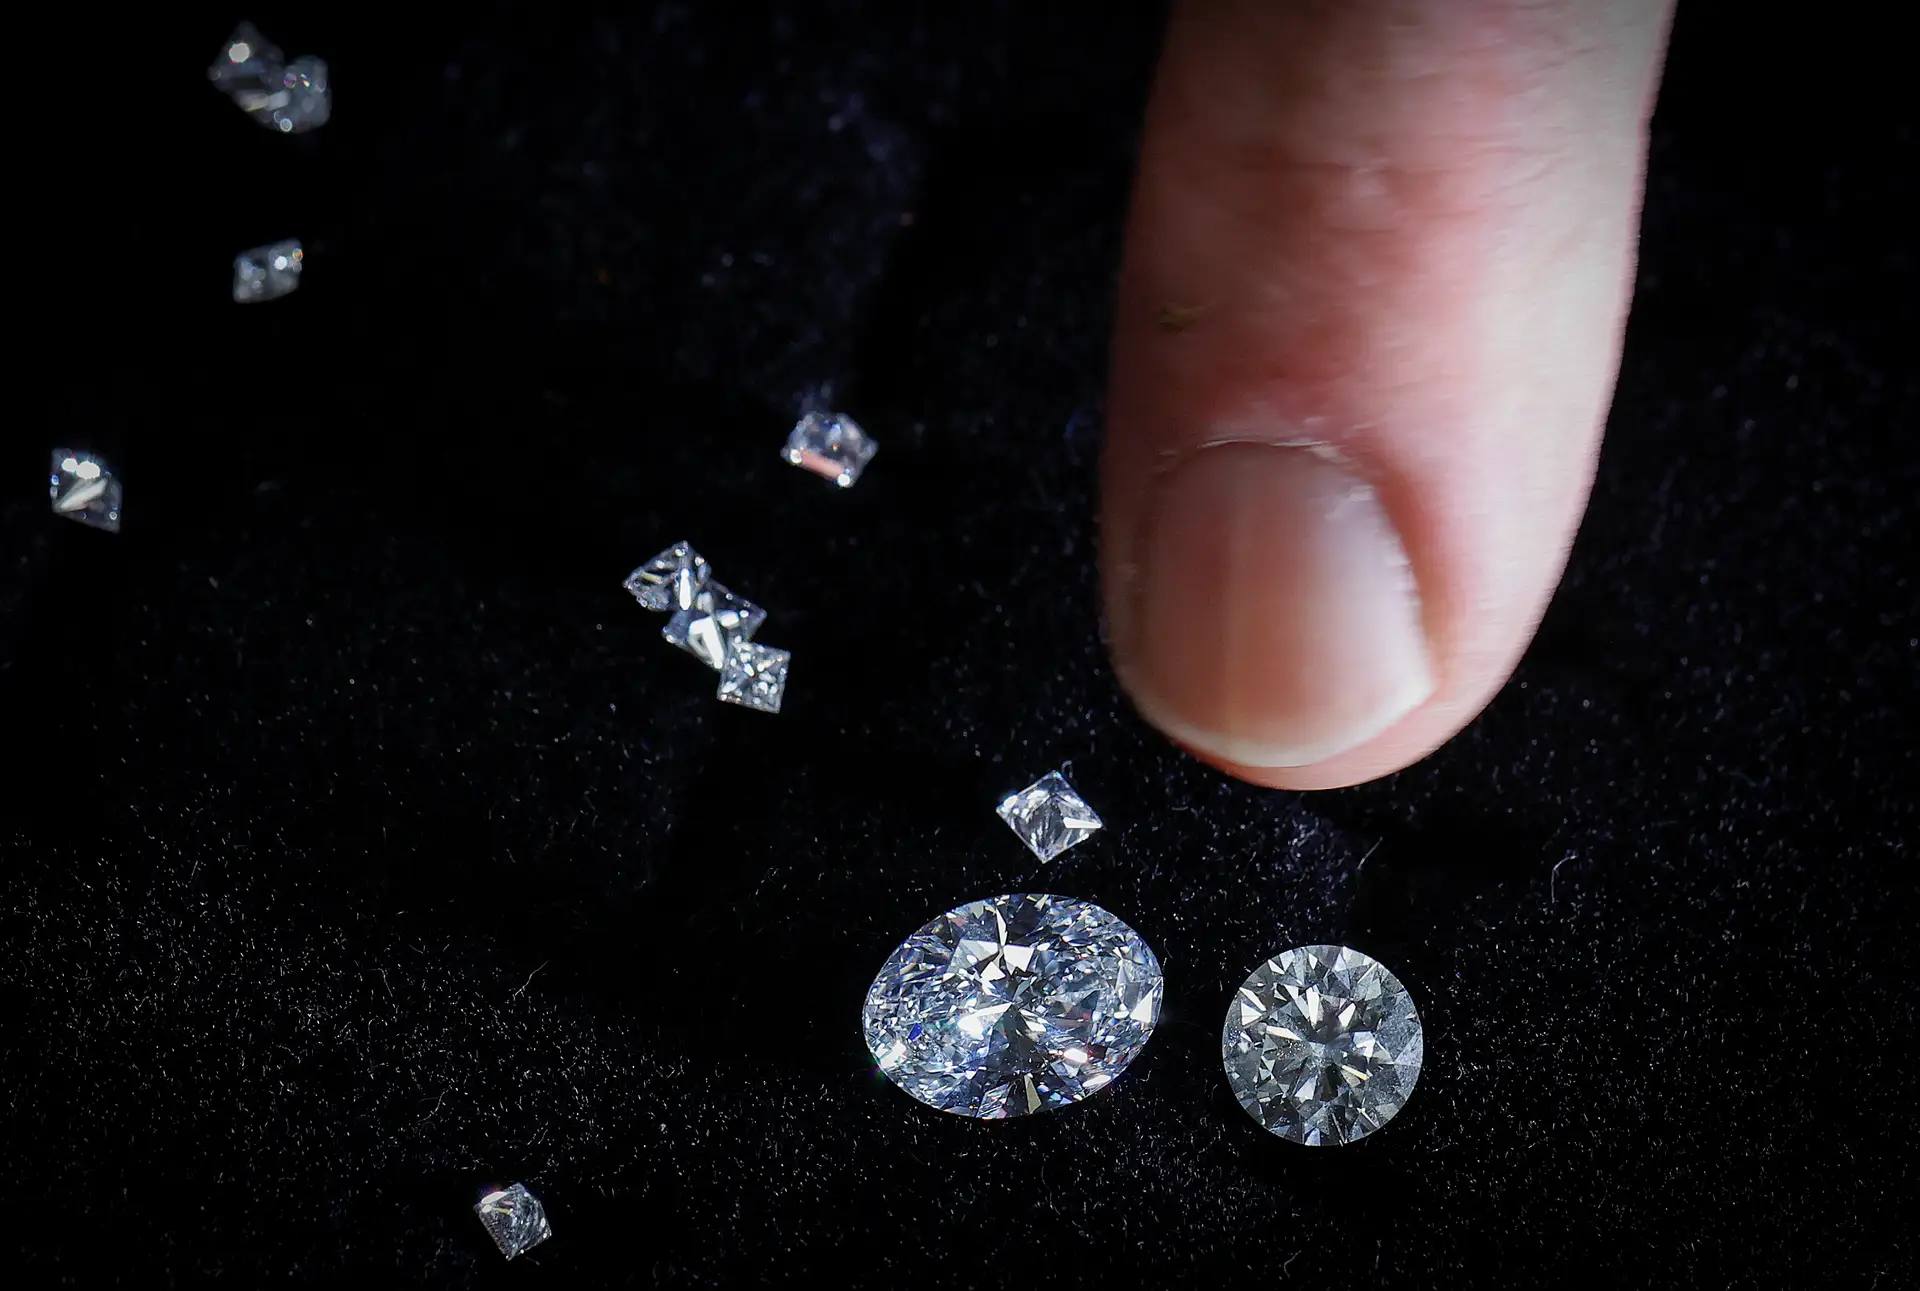 Angola arrecadou 21,7 milhões de dólares com leilão de 1206,91 quilates de diamantes